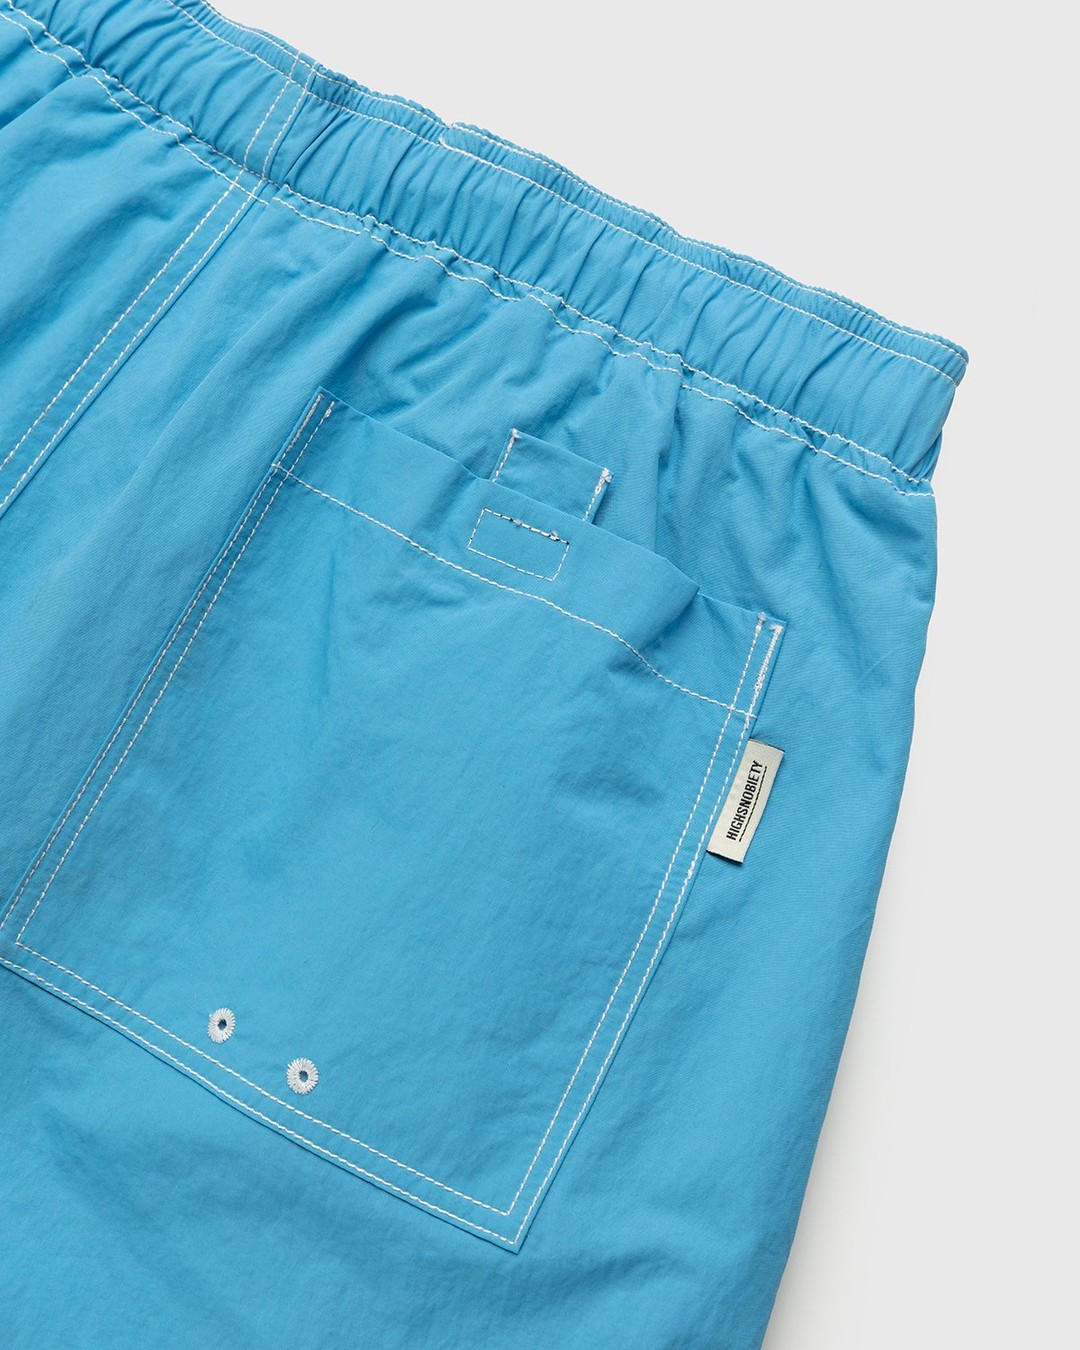 Highsnobiety – Contrast Brushed Nylon Water Shorts Blue - Active Shorts - Blue - Image 3